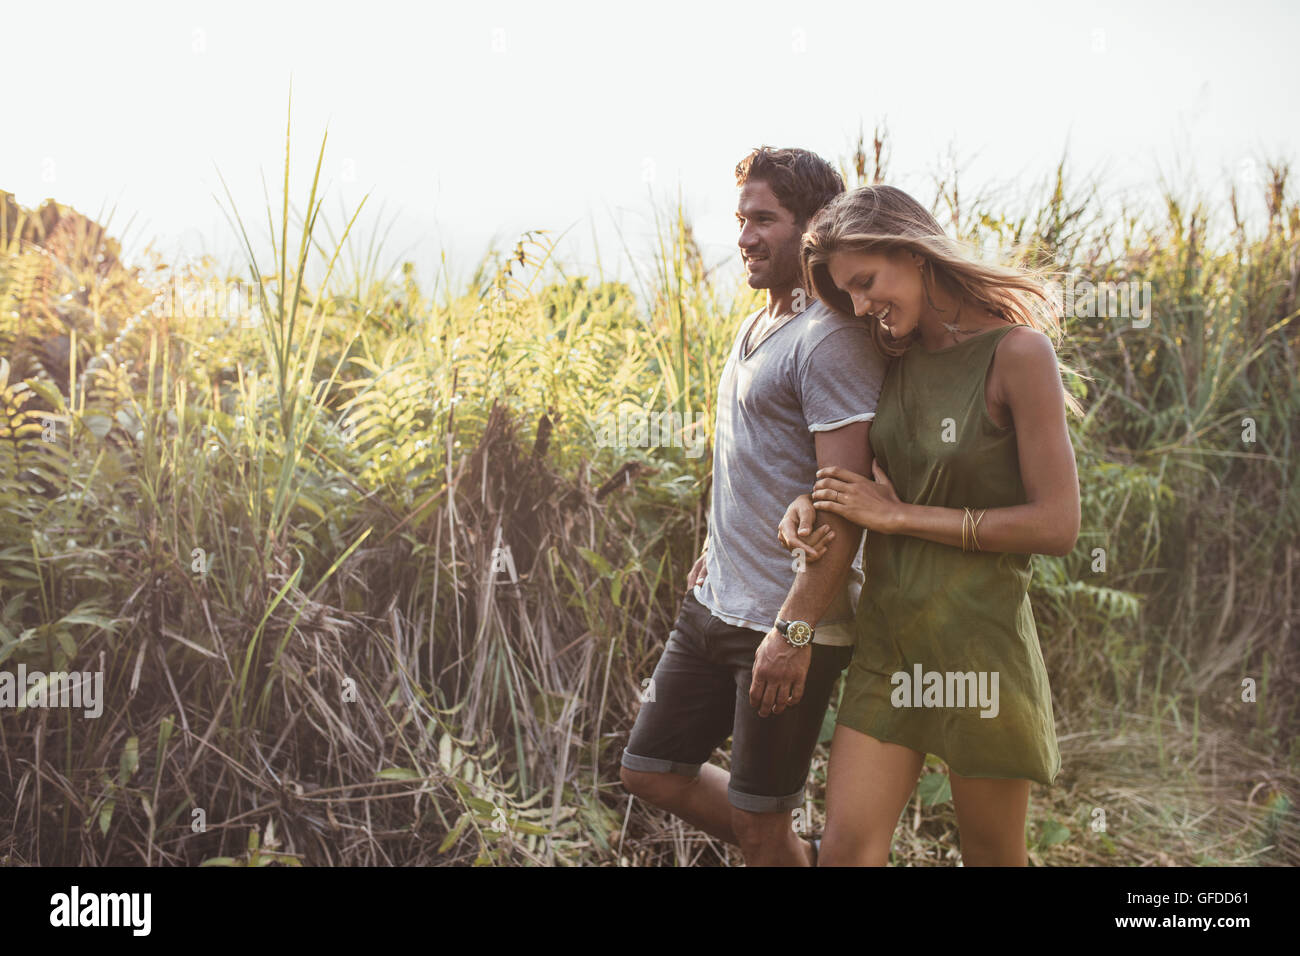 Im Freien Schuss romantischen jungen Paares gehen gemeinsam in die Landschaft. Junger Mann und Frau im Urlaub. Stockfoto